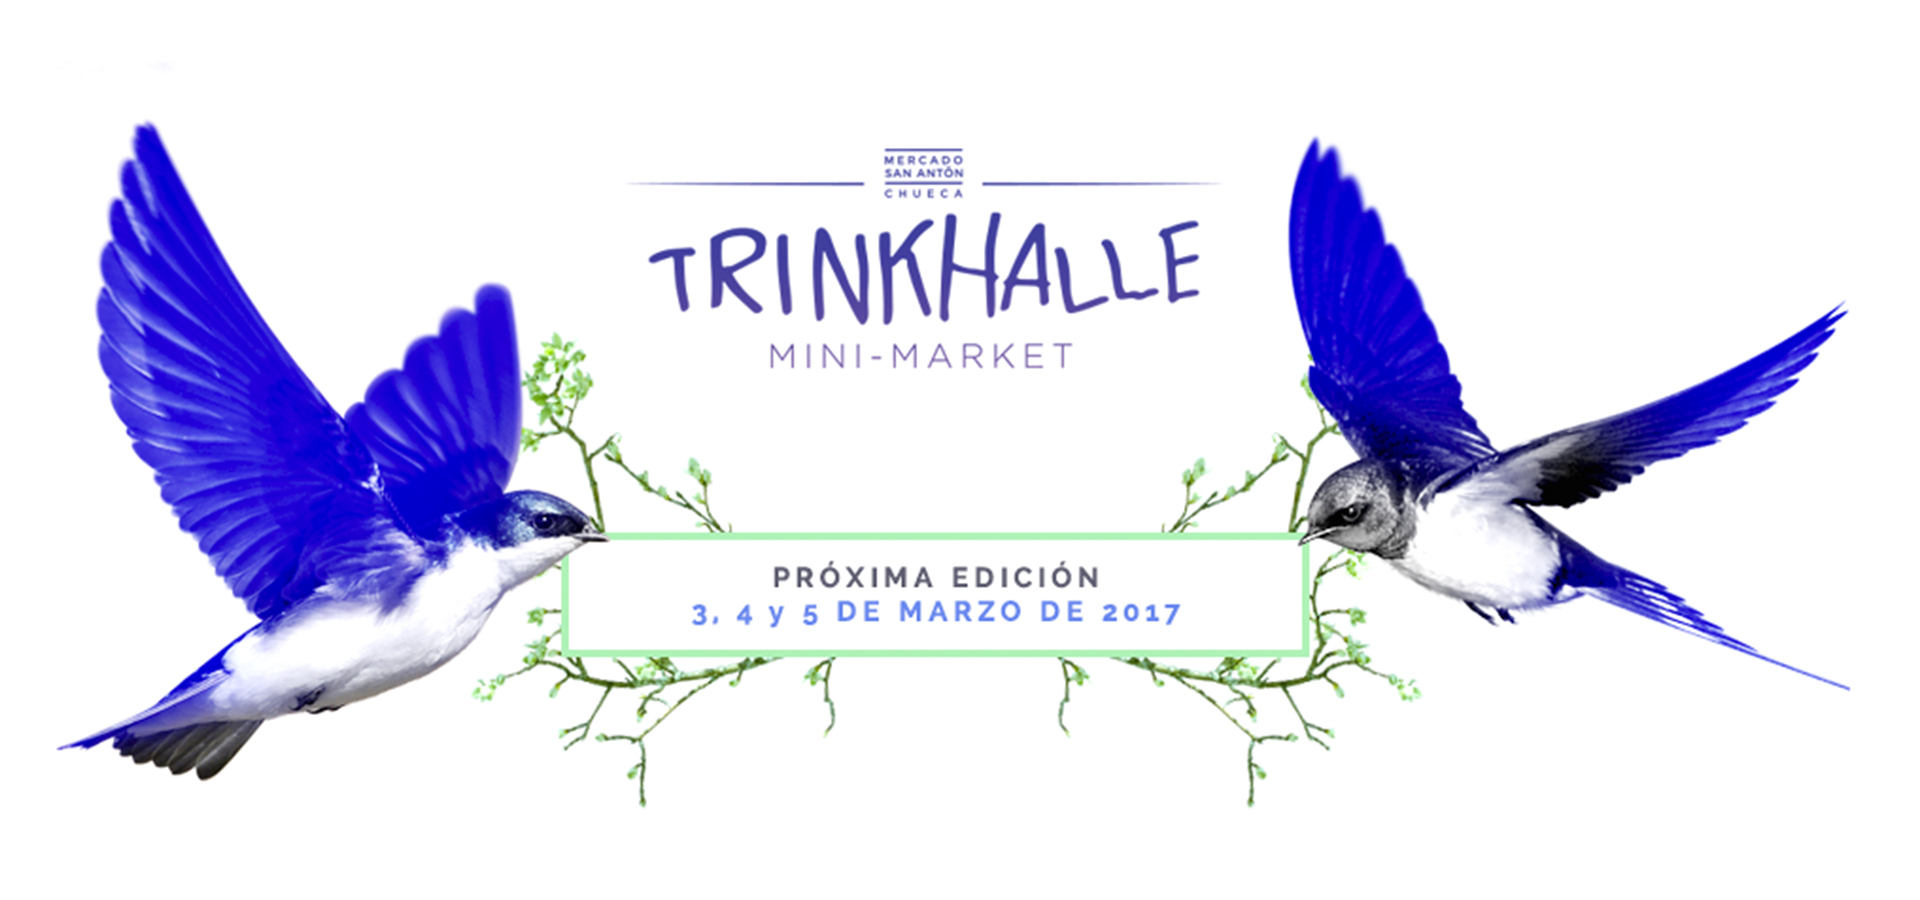 Trinkhalle Mini-Market: nuevas marcas y diseñadores